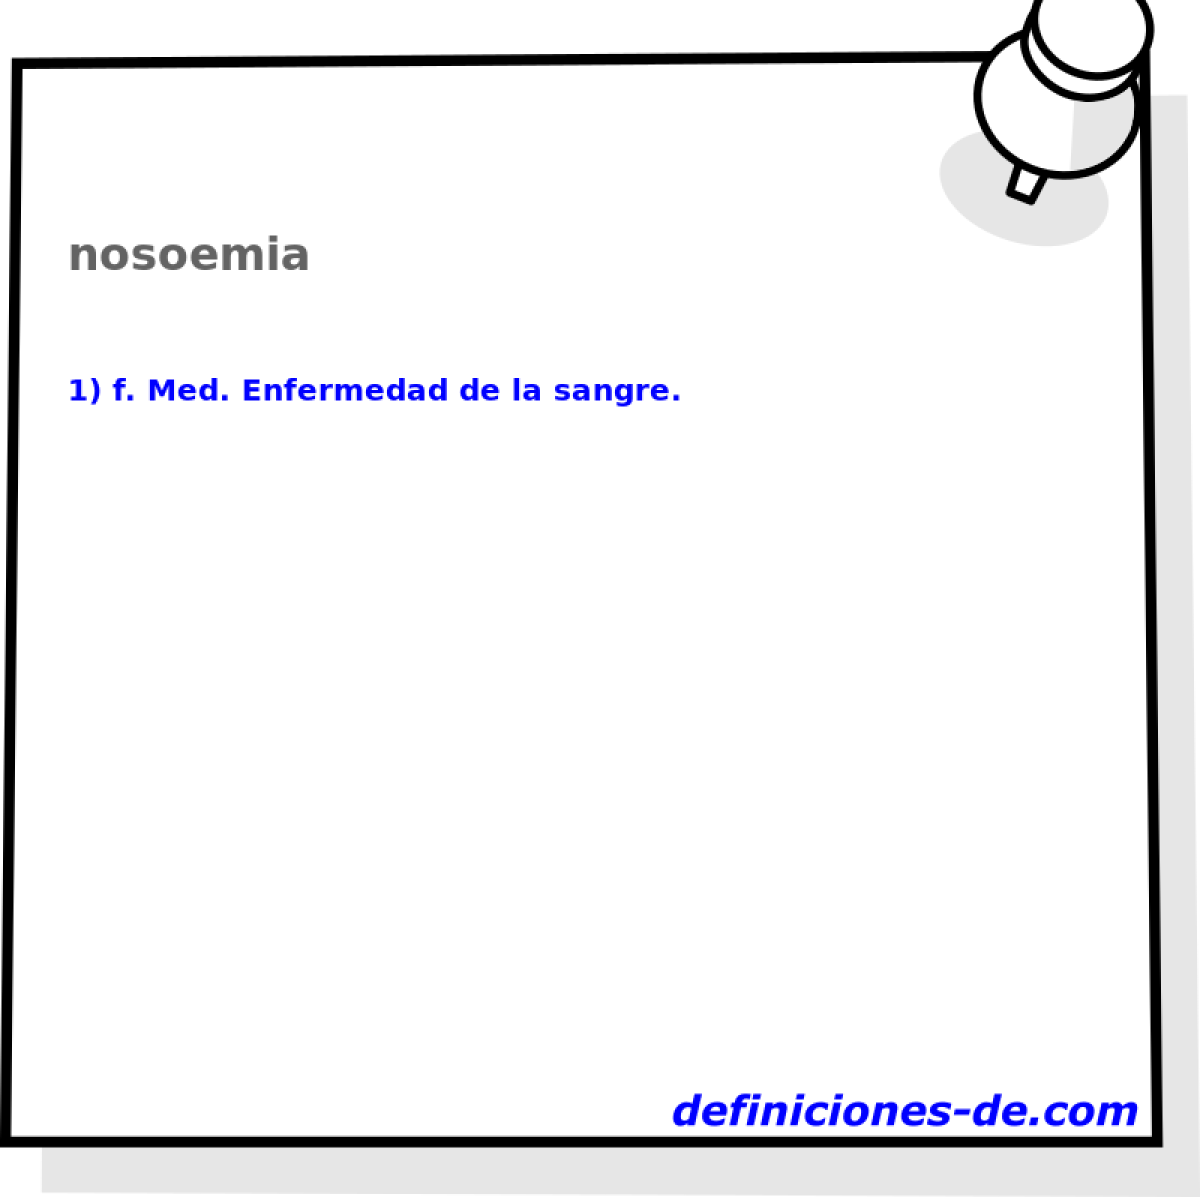 nosoemia 